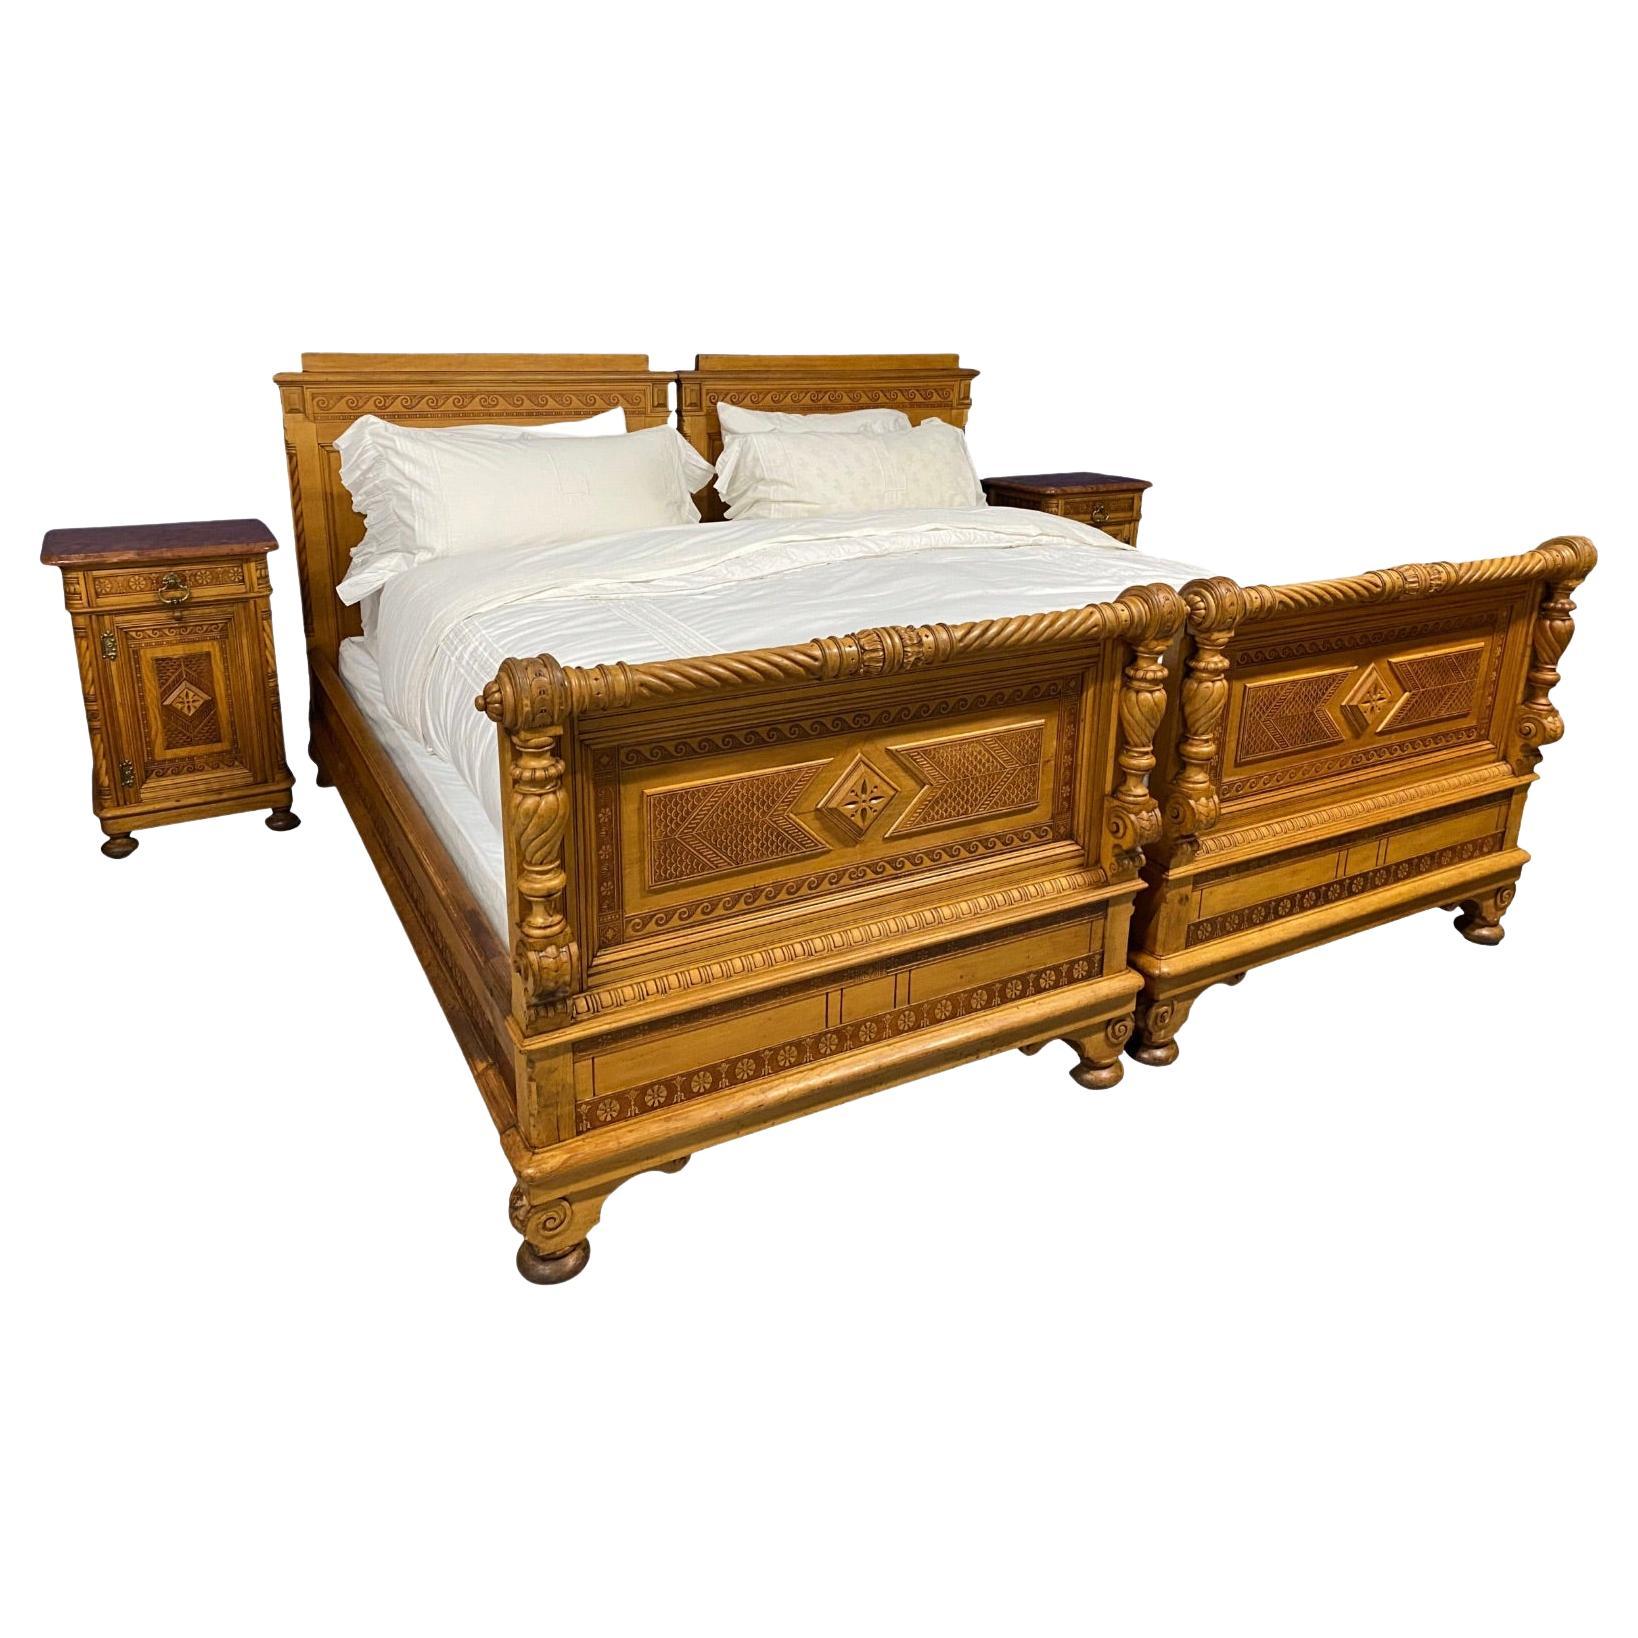 Paire de lits jumeaux en pin européens du 19ème siècle reconfigurés en lit de roi